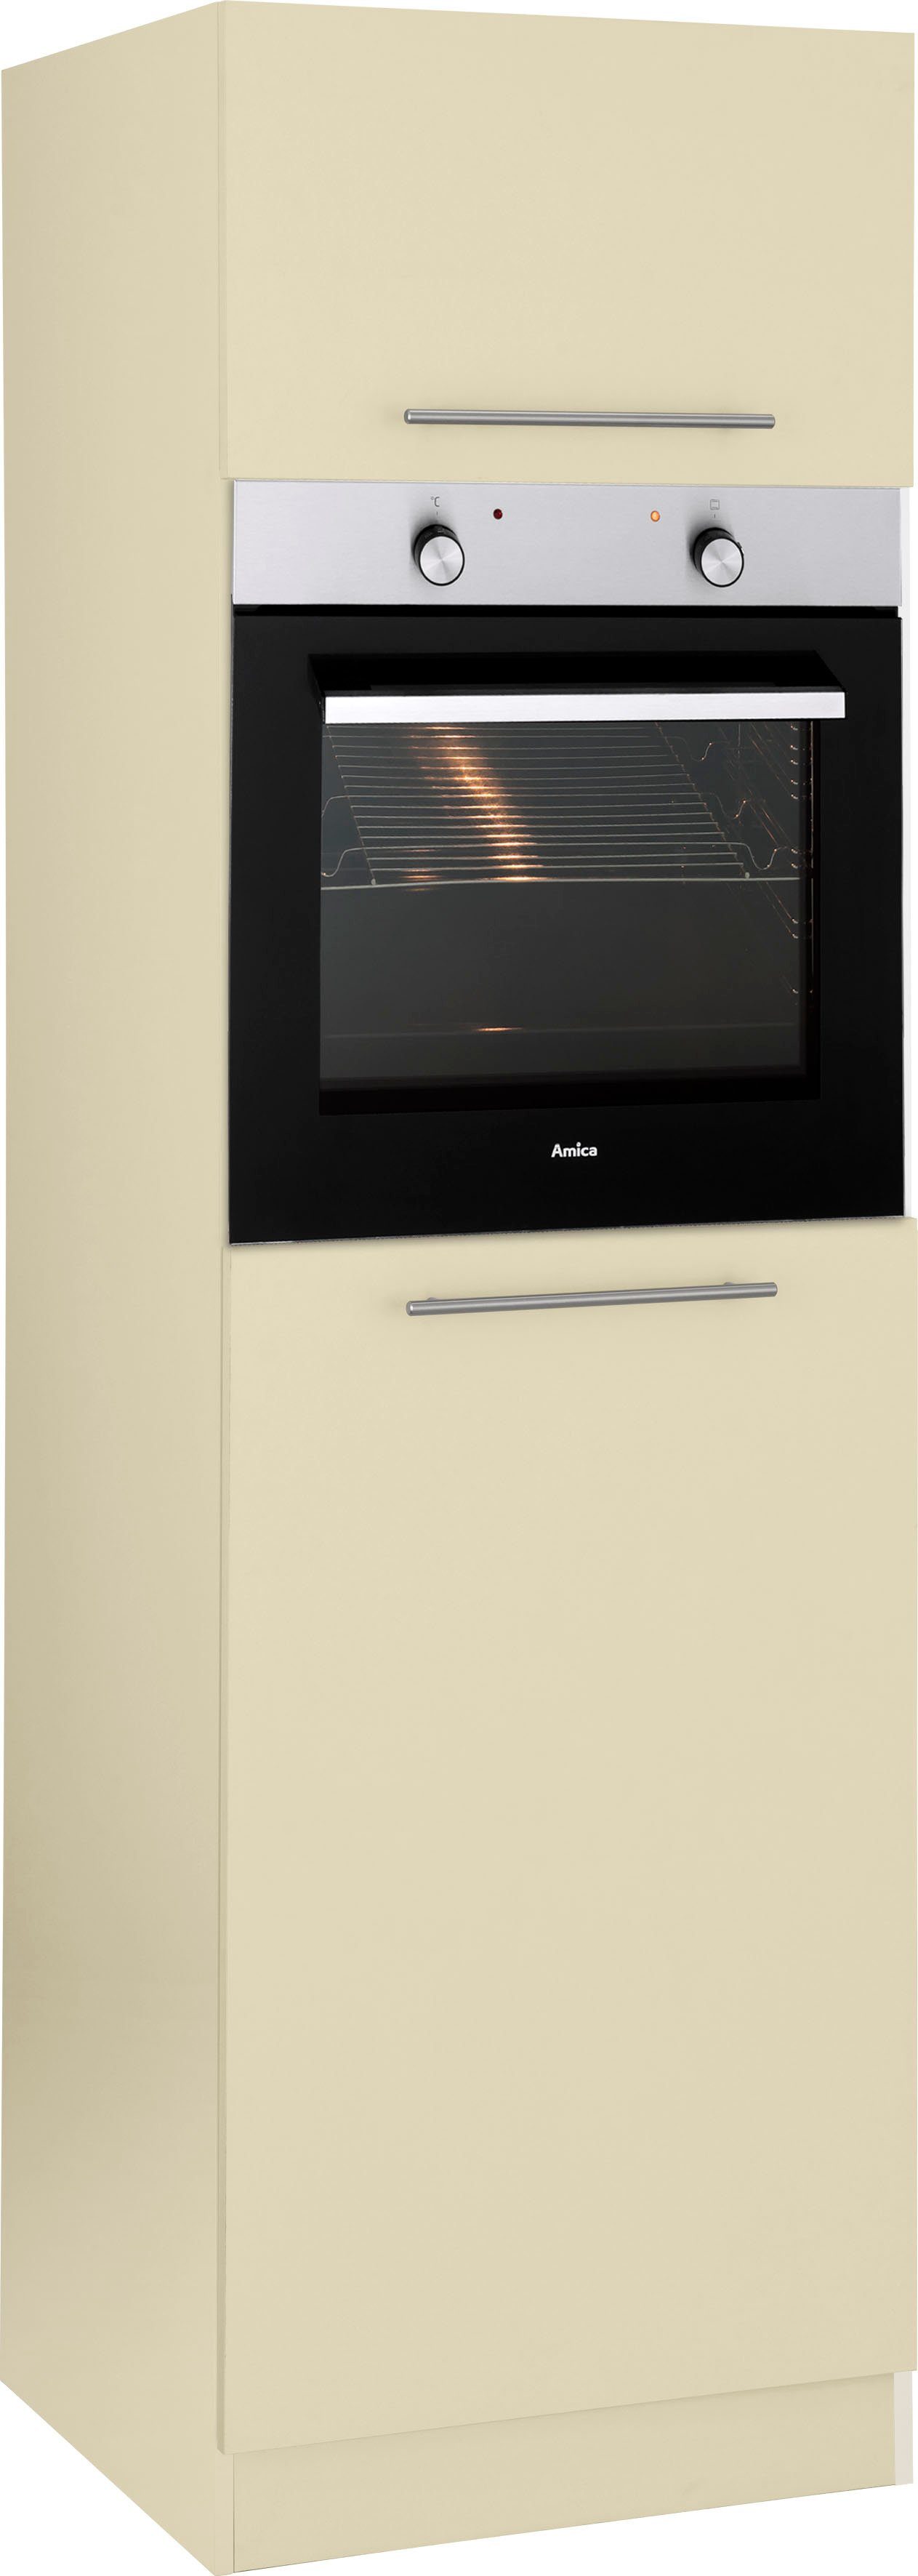 wiho Küchen Oven/koelkastombouw Unna 60 cm breed